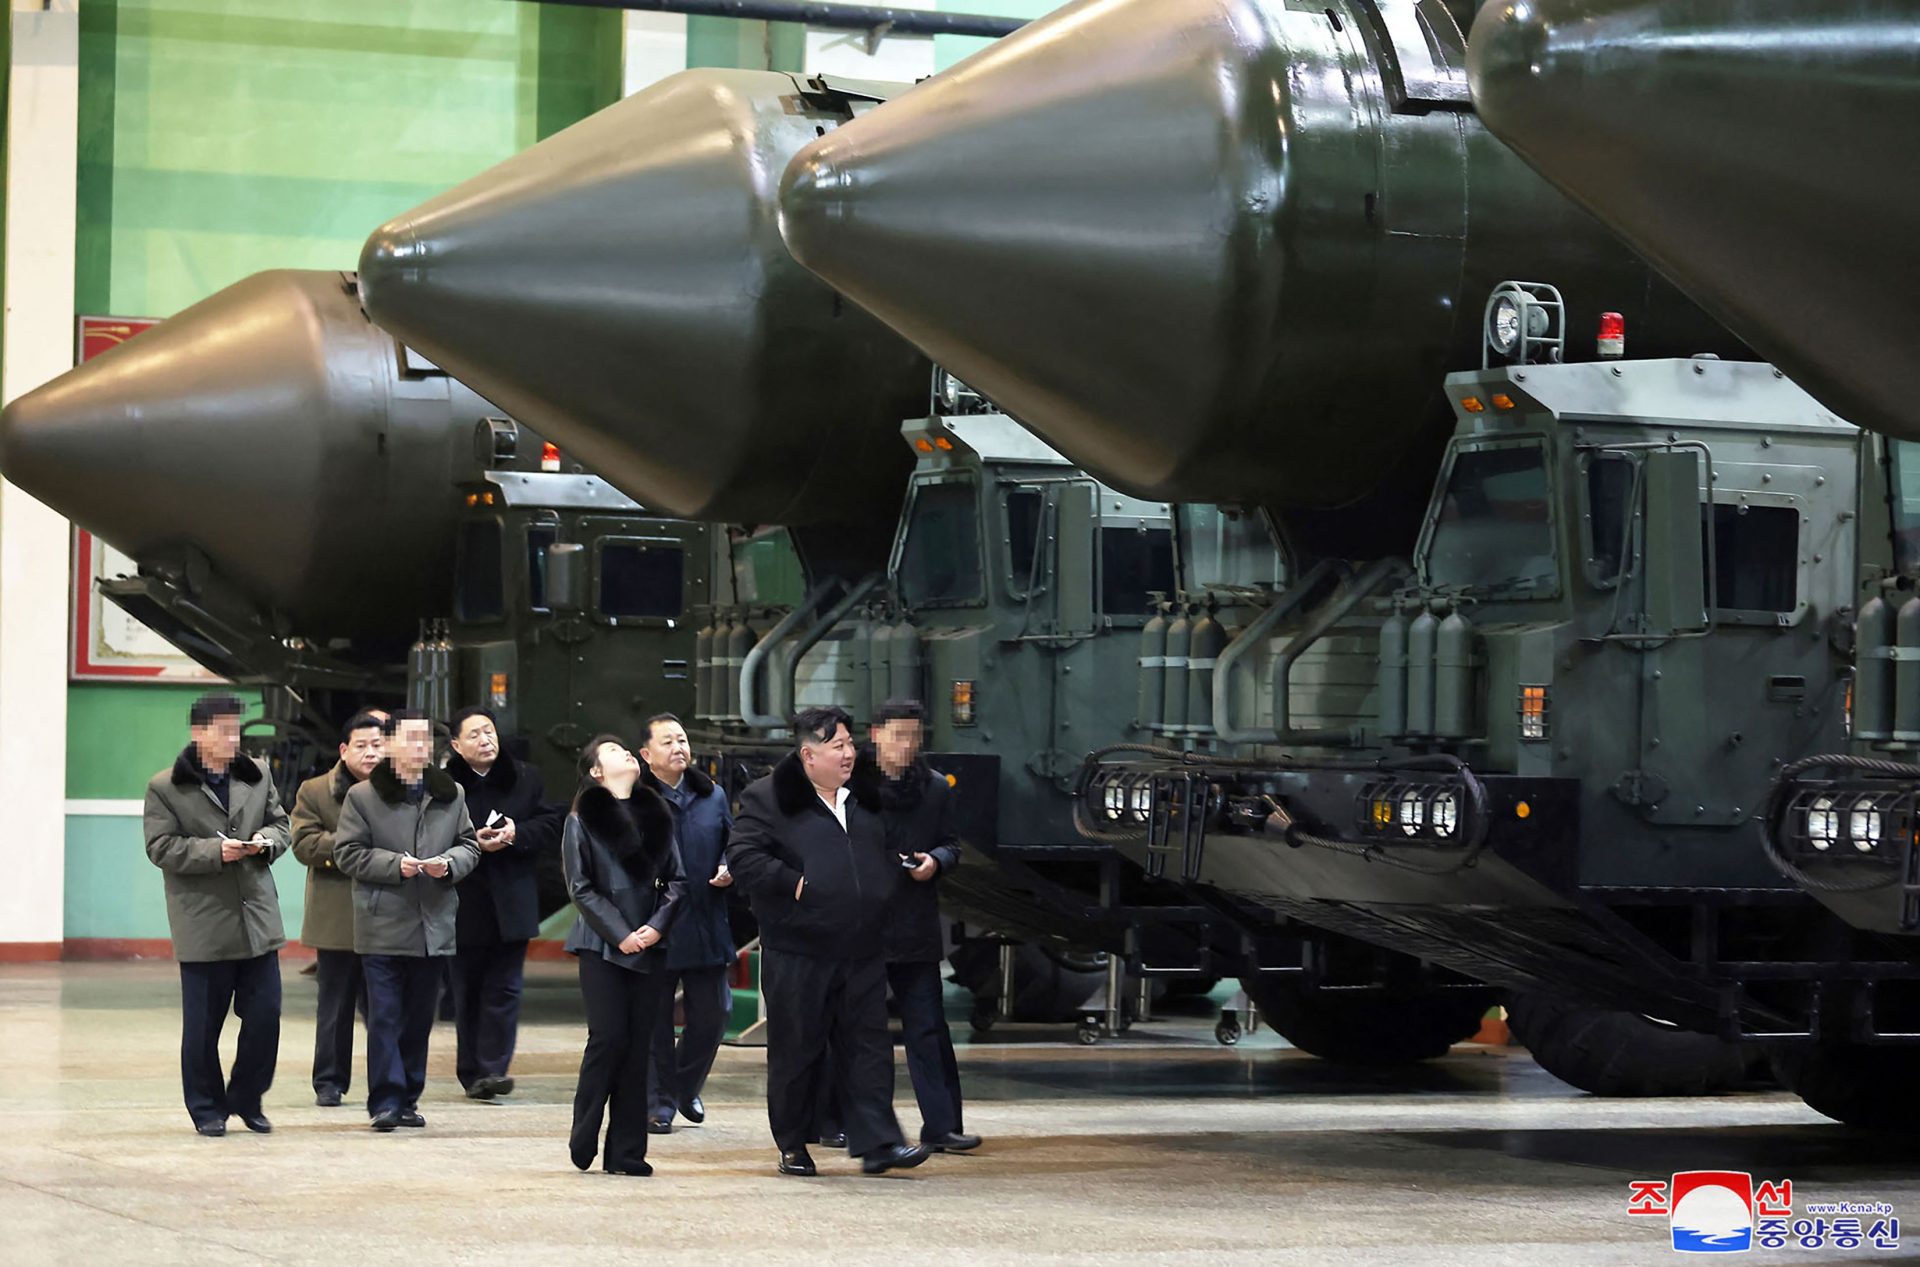 Coreia do Norte. Programa nuclear e proximidade com Rússia condenados